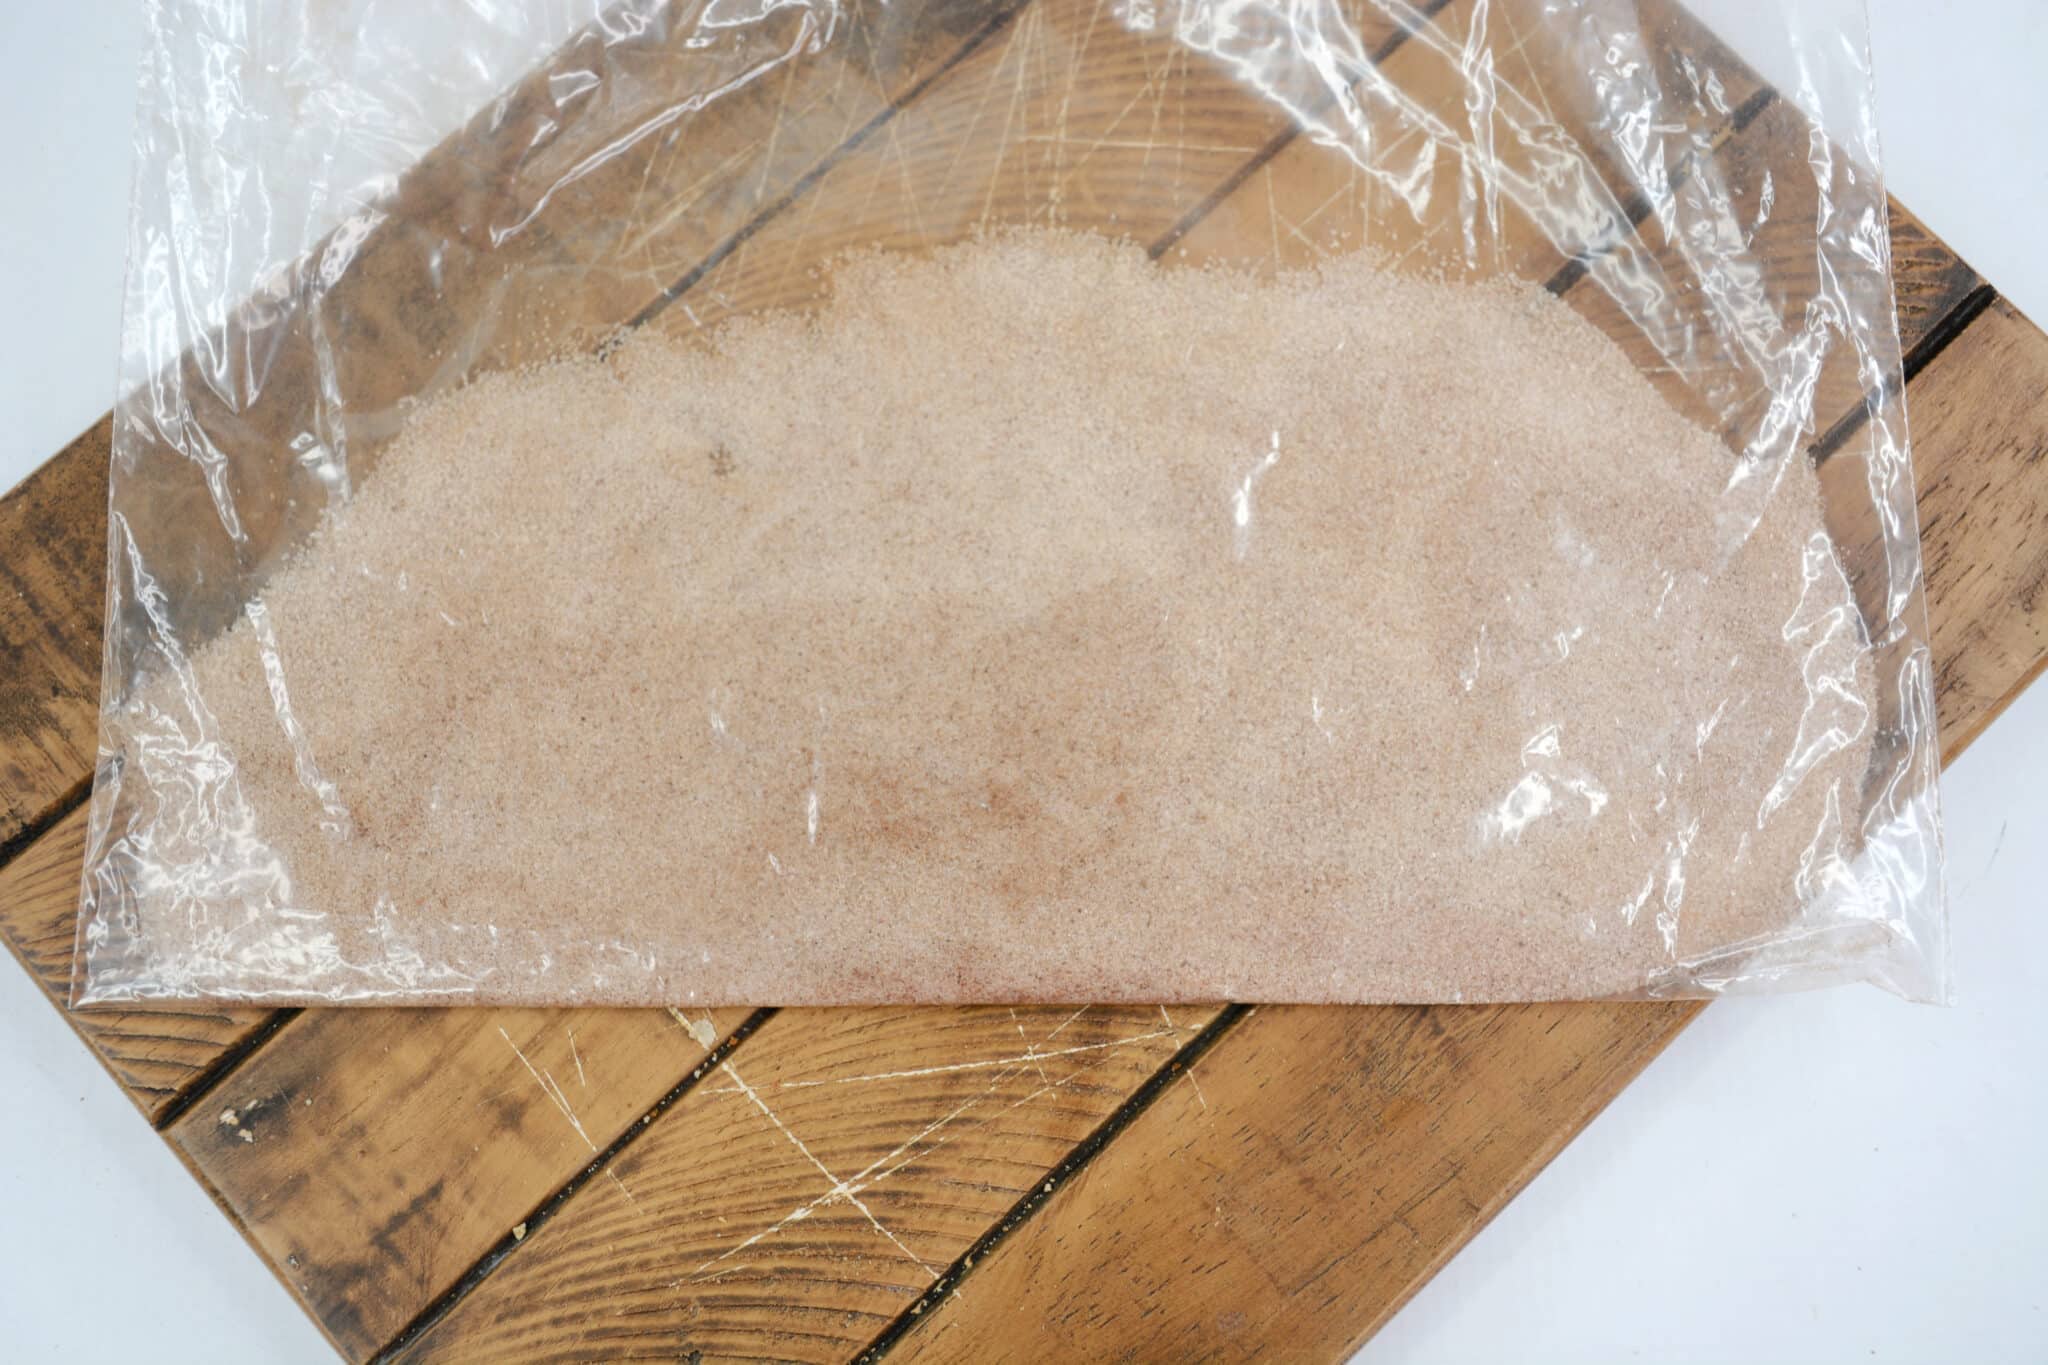 cinnamon sugar in the plasatic bag